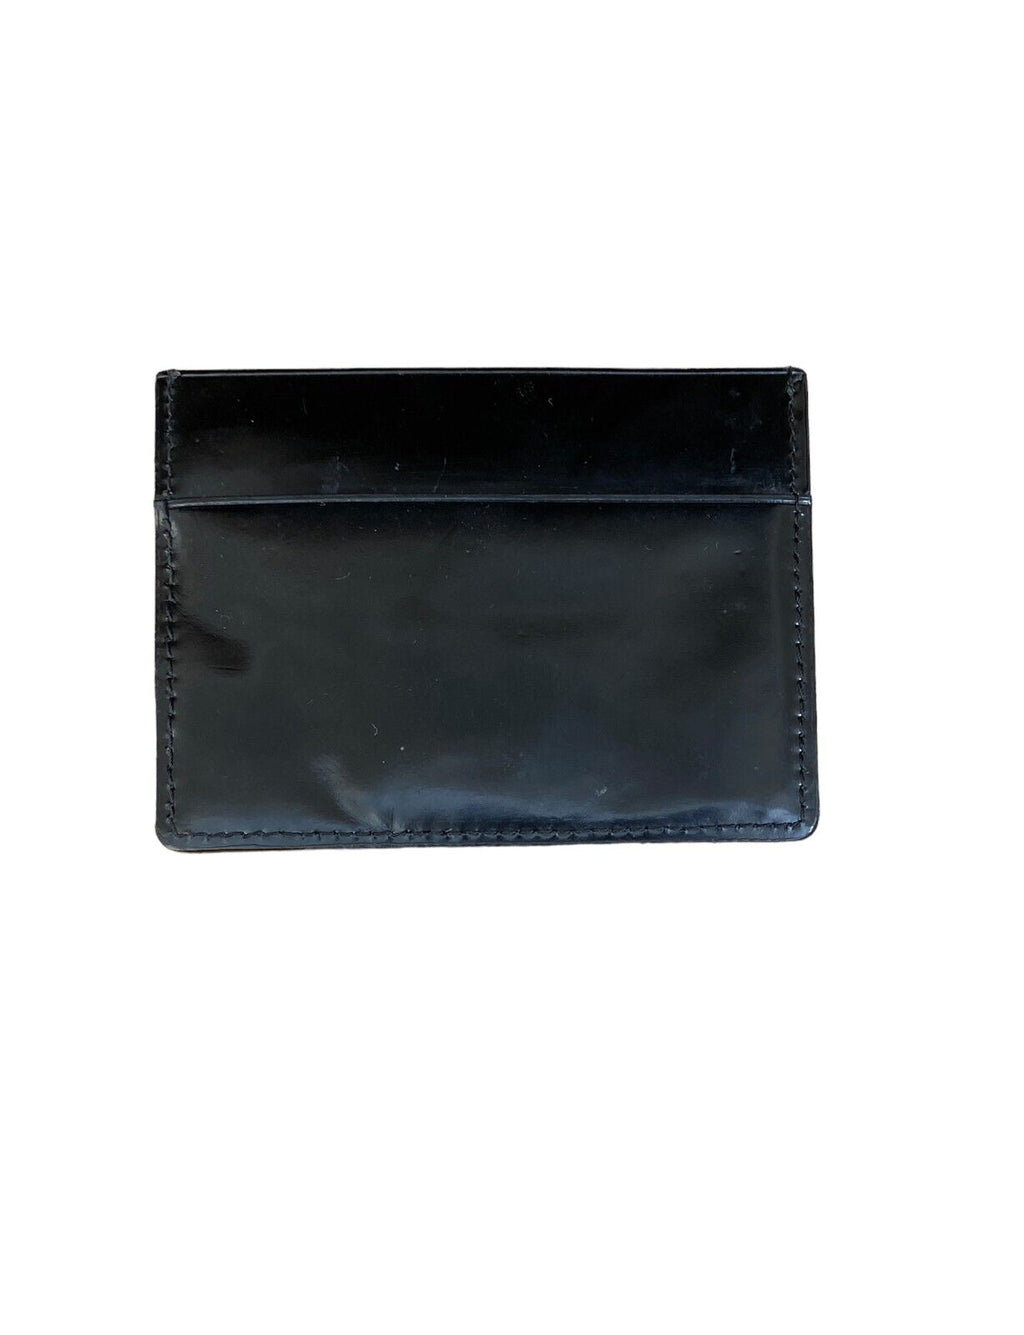 Black leather cardholder